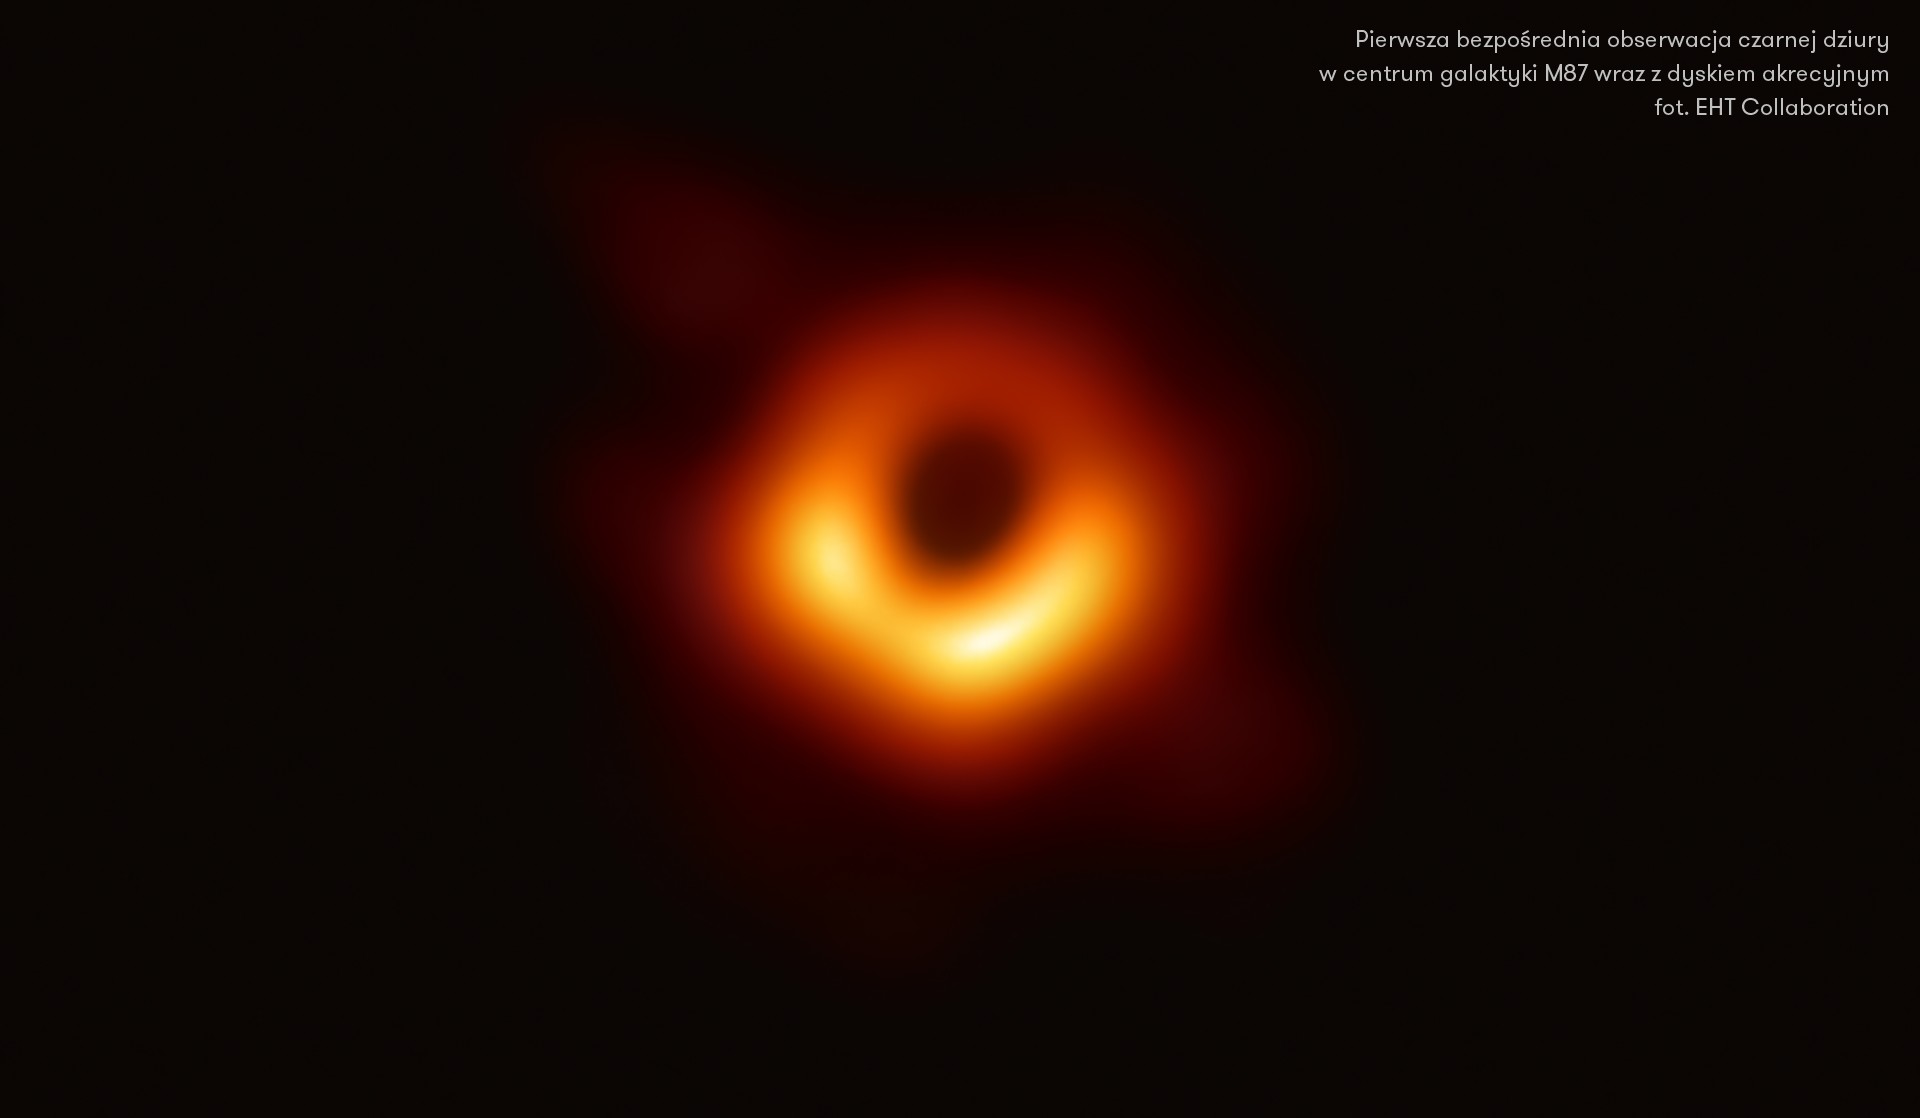 Pierwsza bezpośrednia obserwacja czarnej dziury w centrum galaktyki M87 wraz z dyskiem akrecyjnym